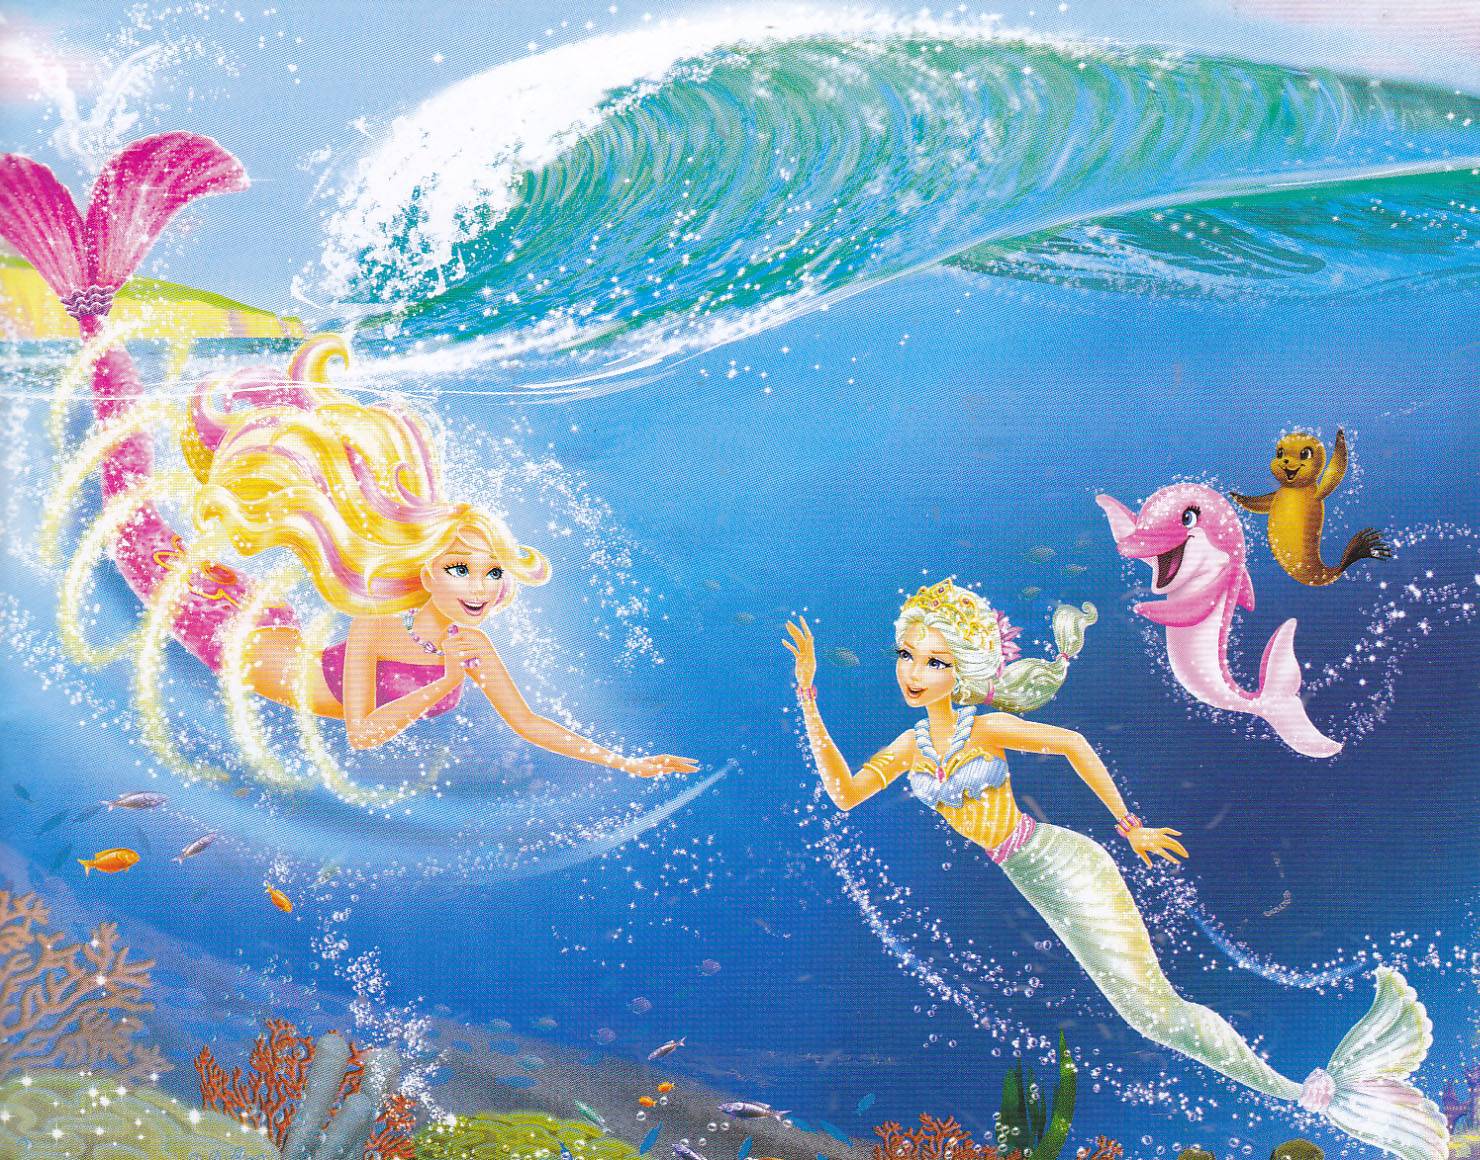 Barbie In A Mermaid Tale wallpapers.